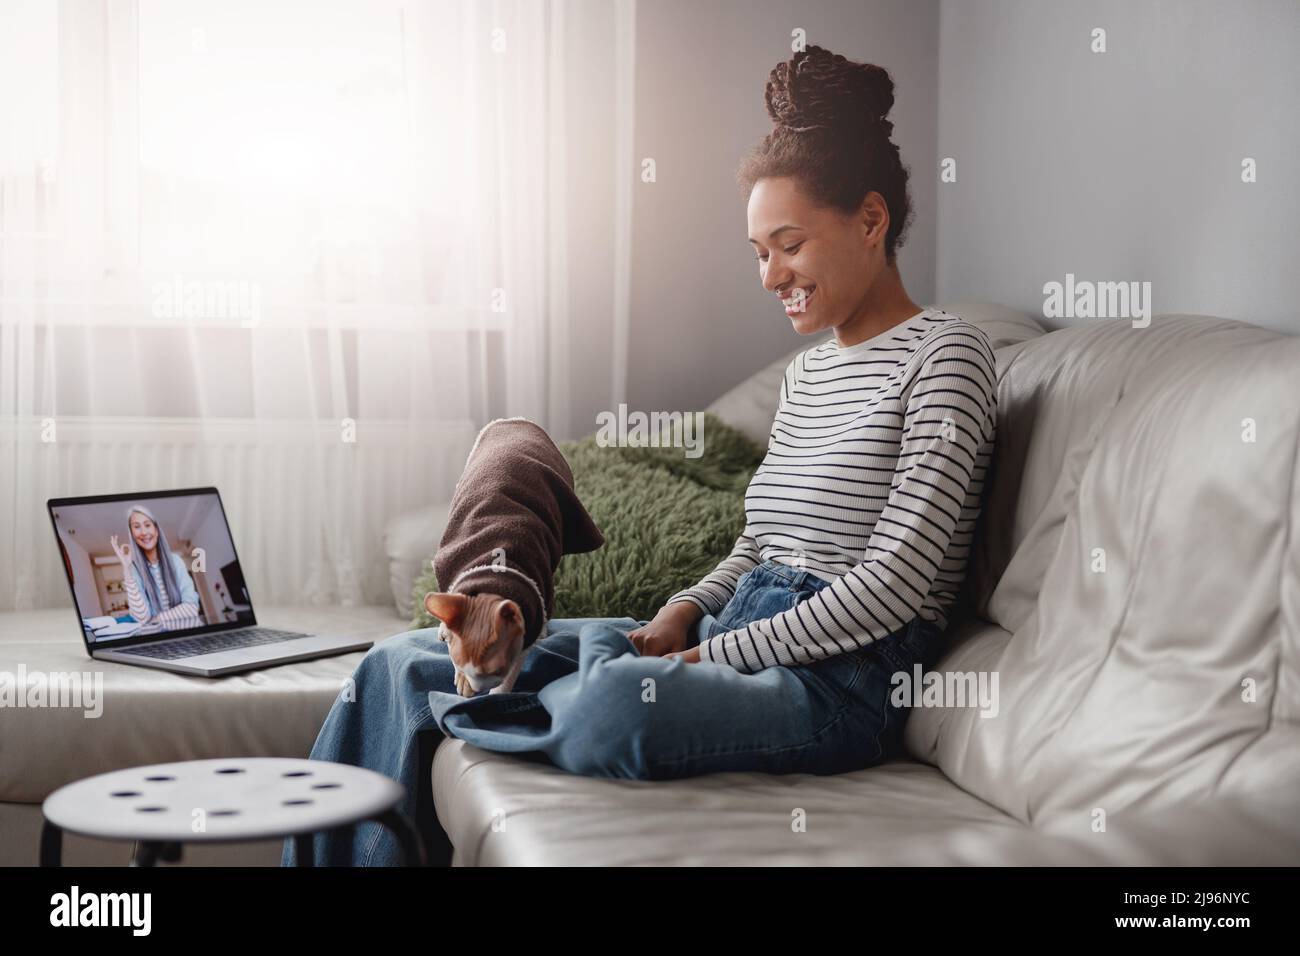 Glückliche junge Frau, die lächelt und auf der Couch sitzt und mit der Katze spielt, während sie einen Videoanruf hat Stockfoto